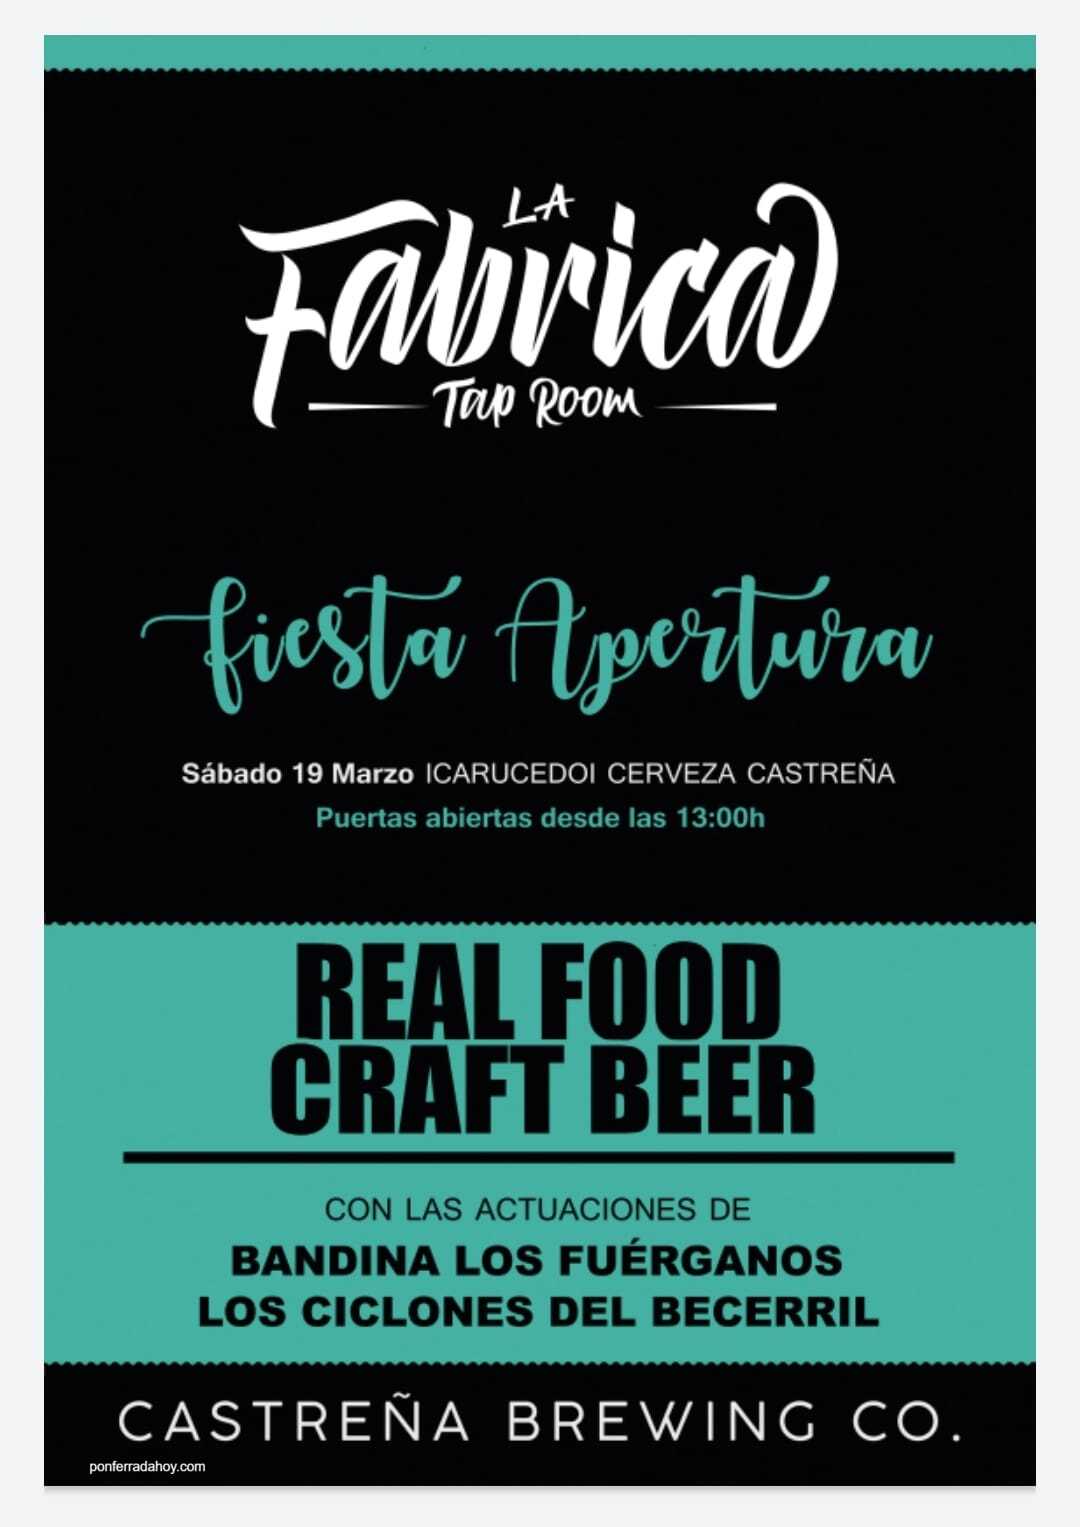 Cerveza Castreña inaugura este sábado 'Tap Room La Fábrica', un espacio gastronómico y de culto a la cerveza nacional 3